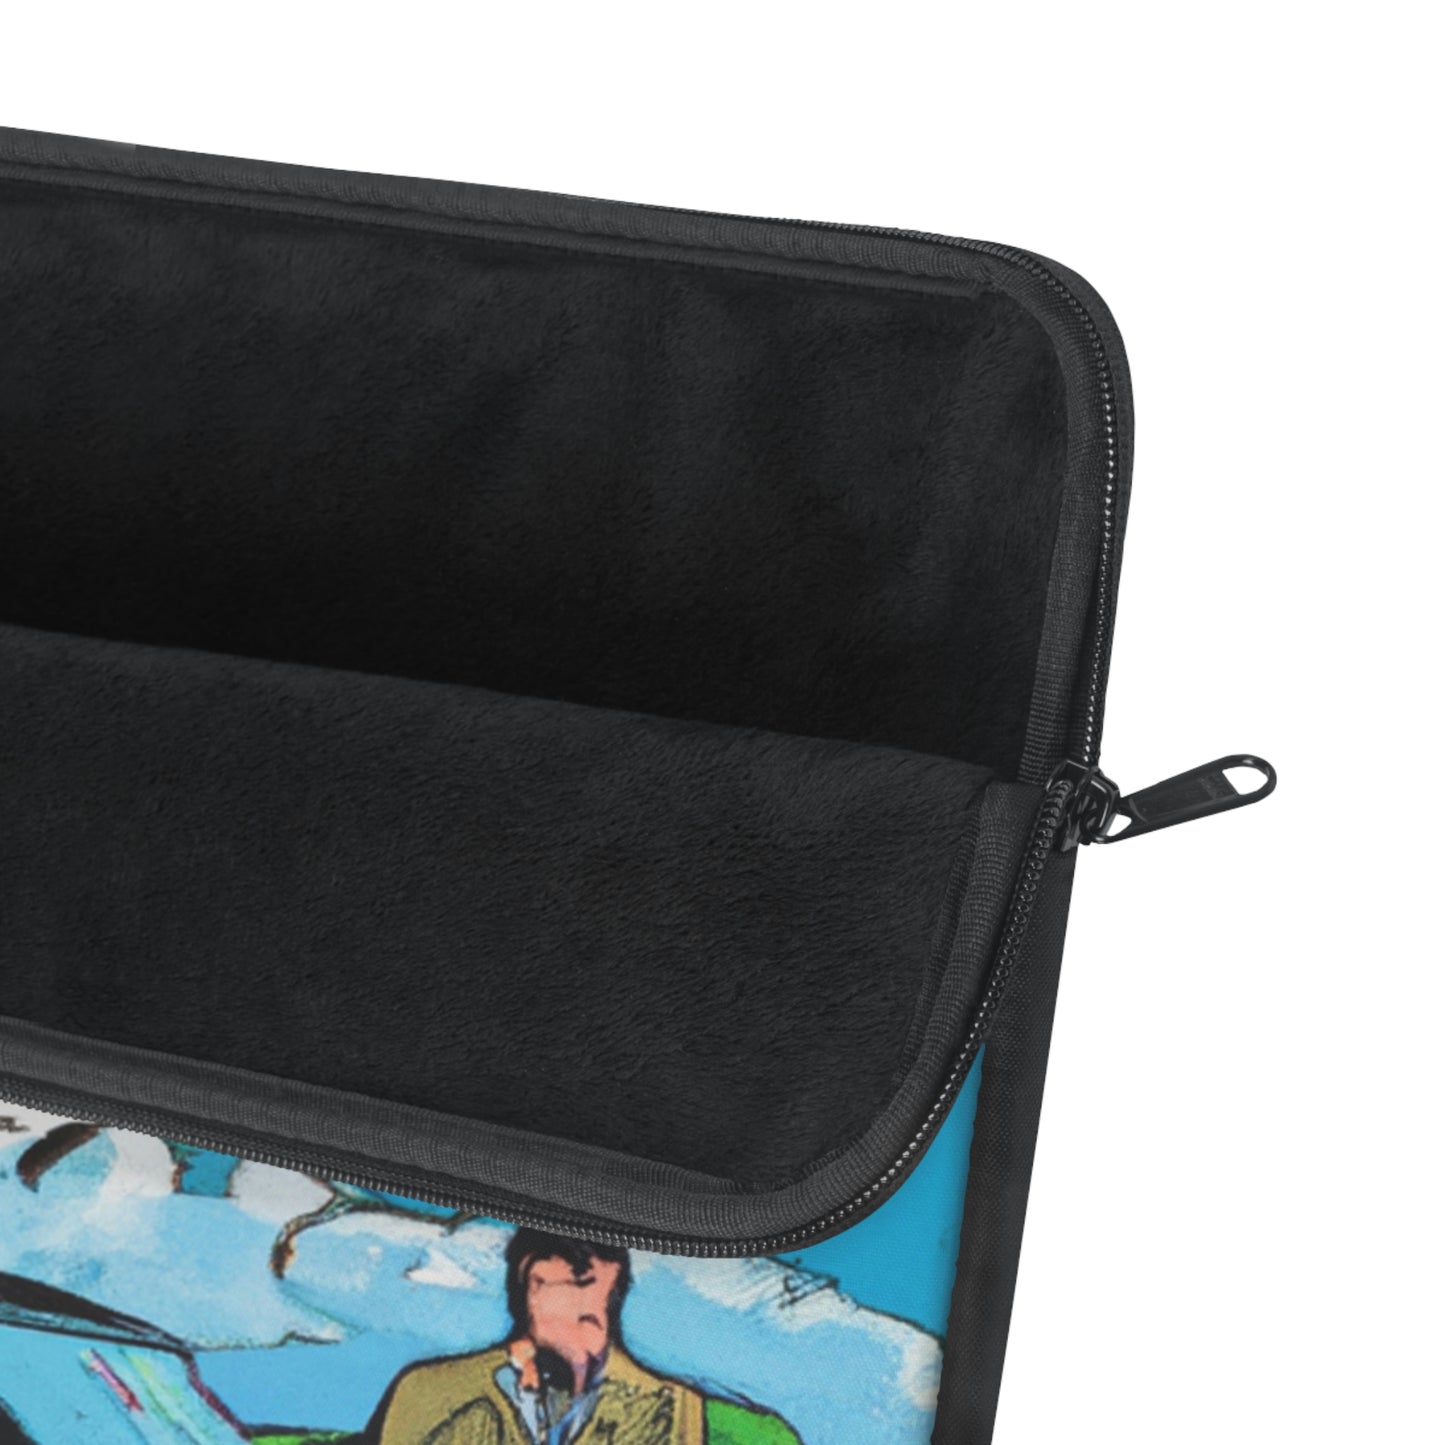 TinTin the Tin Man - Comic Book Collector Laptop Computer Sleeve Storage Case Bag